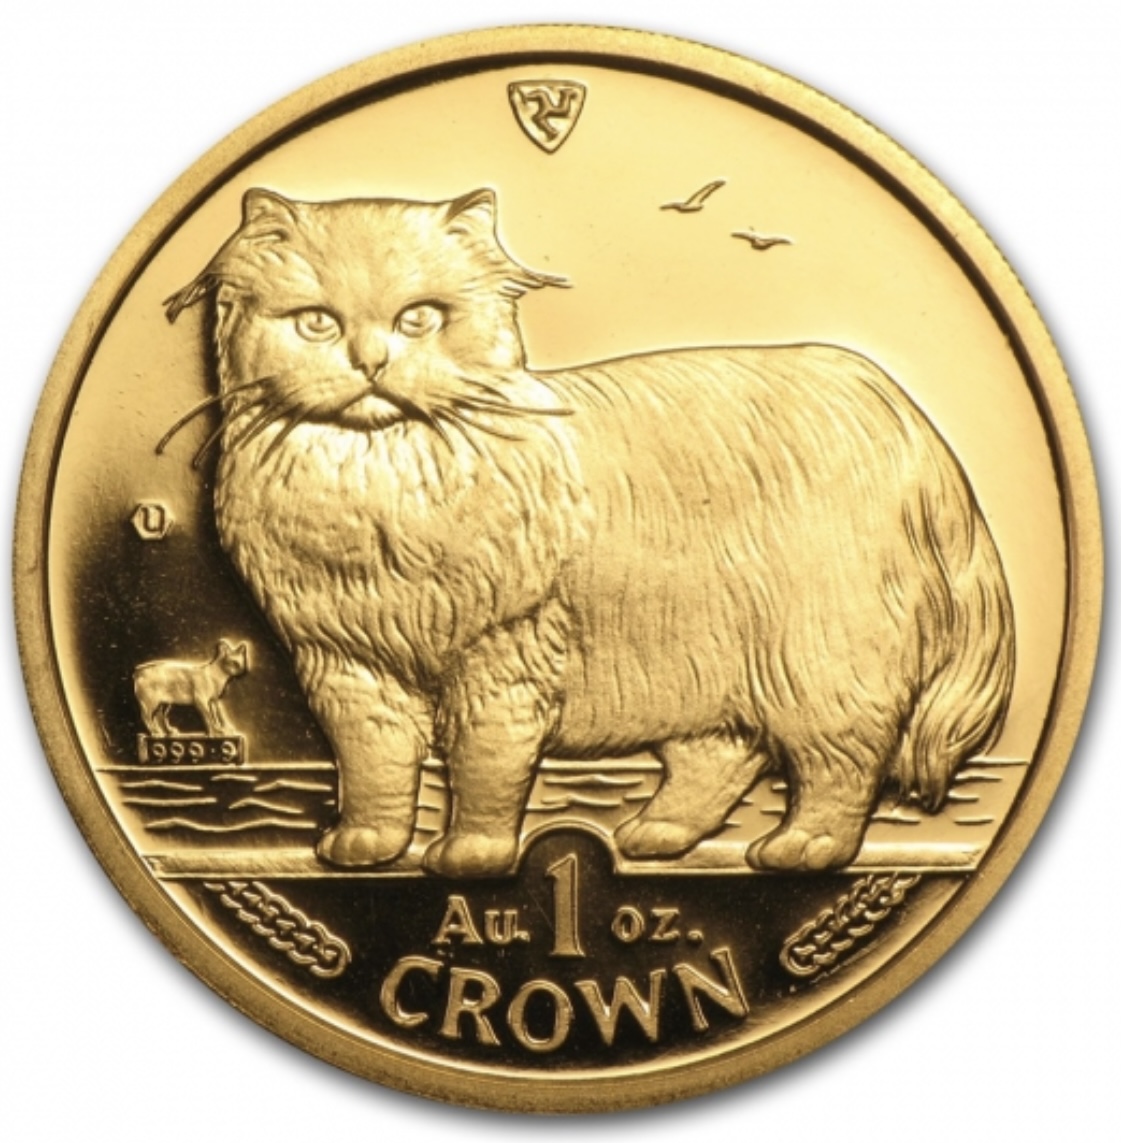 キャット 金貨 イギリス領マン島が誇る世界に愛される金貨の価値 ...